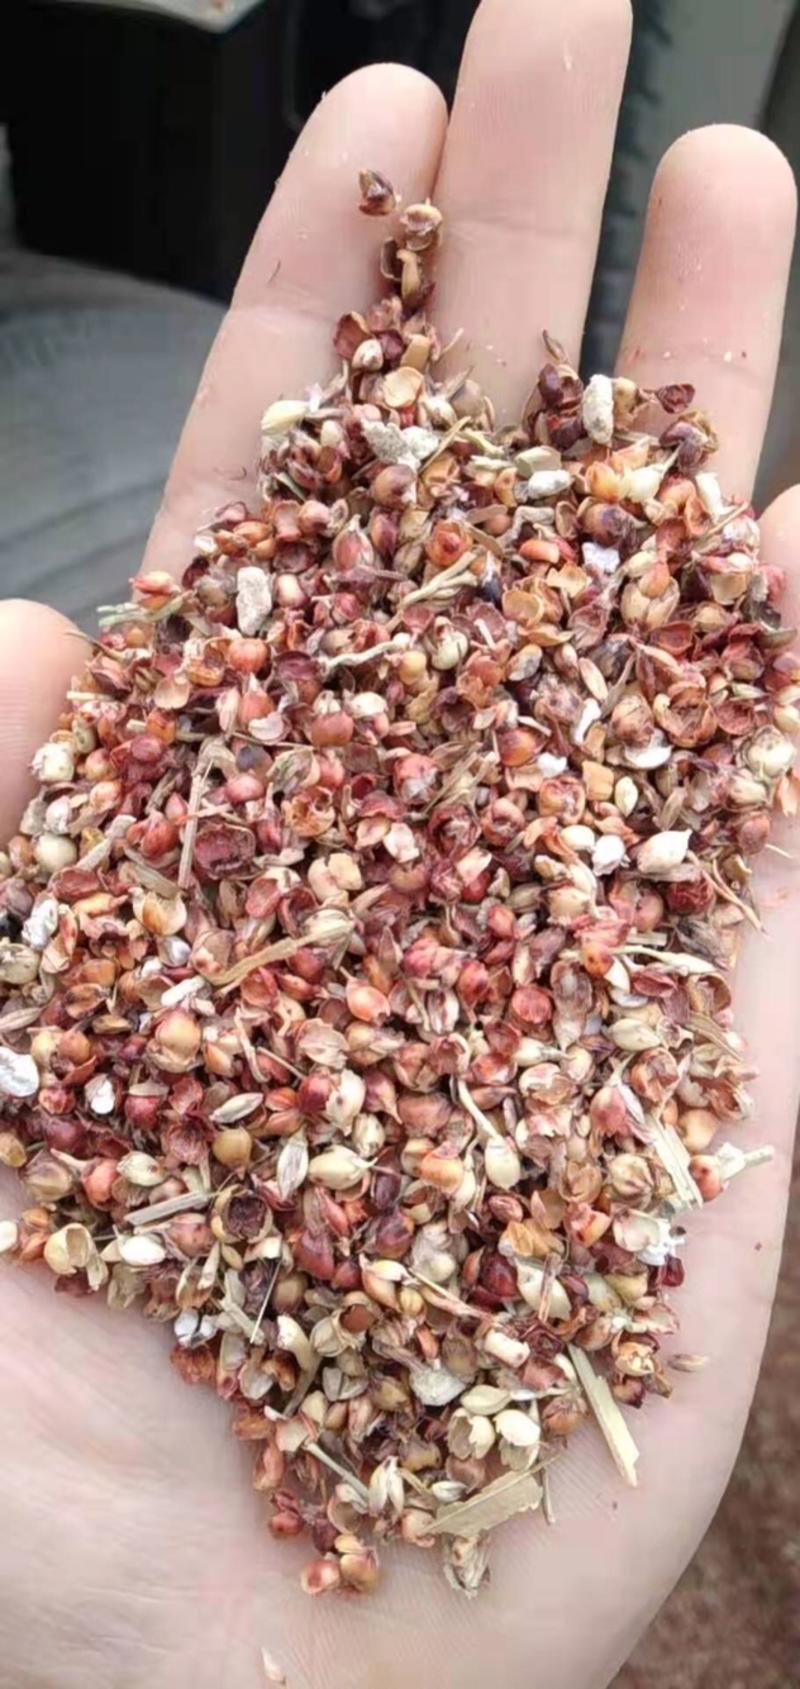 【热销】高粱壳适用于养殖场用于牛羊鸭子鹅草料常年有货